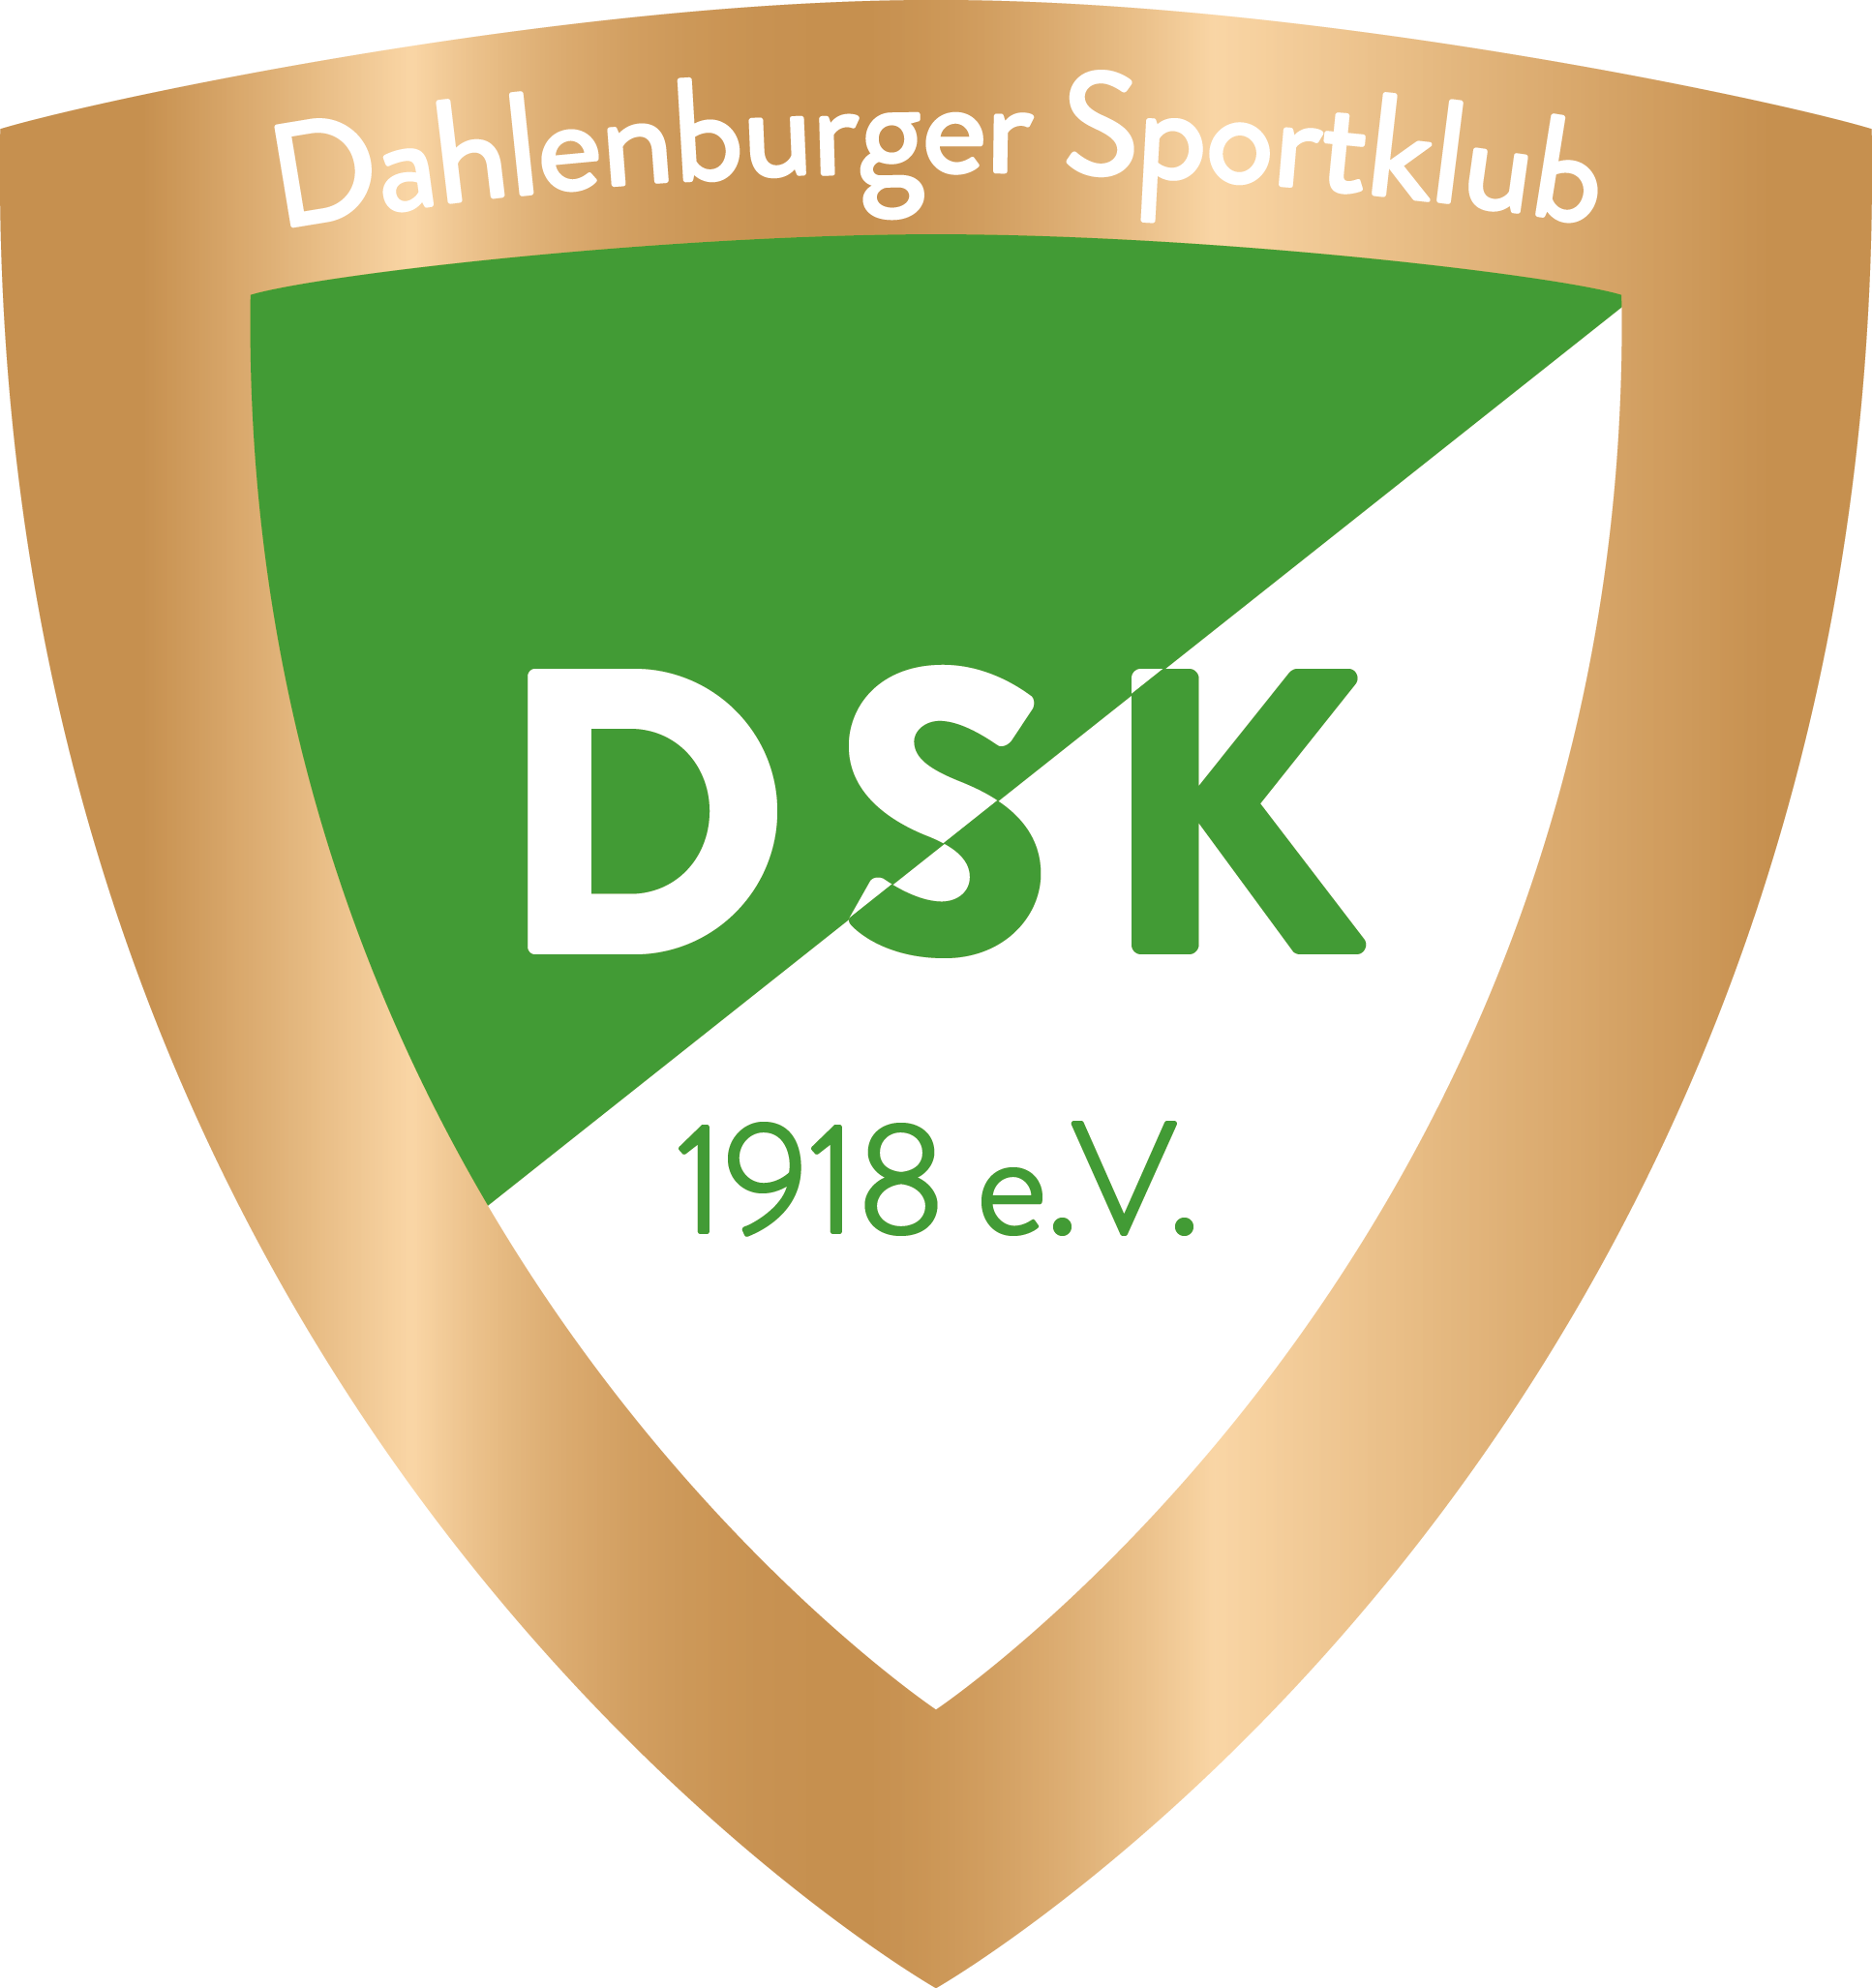 Dahlenburger SK von 1918 e.V.